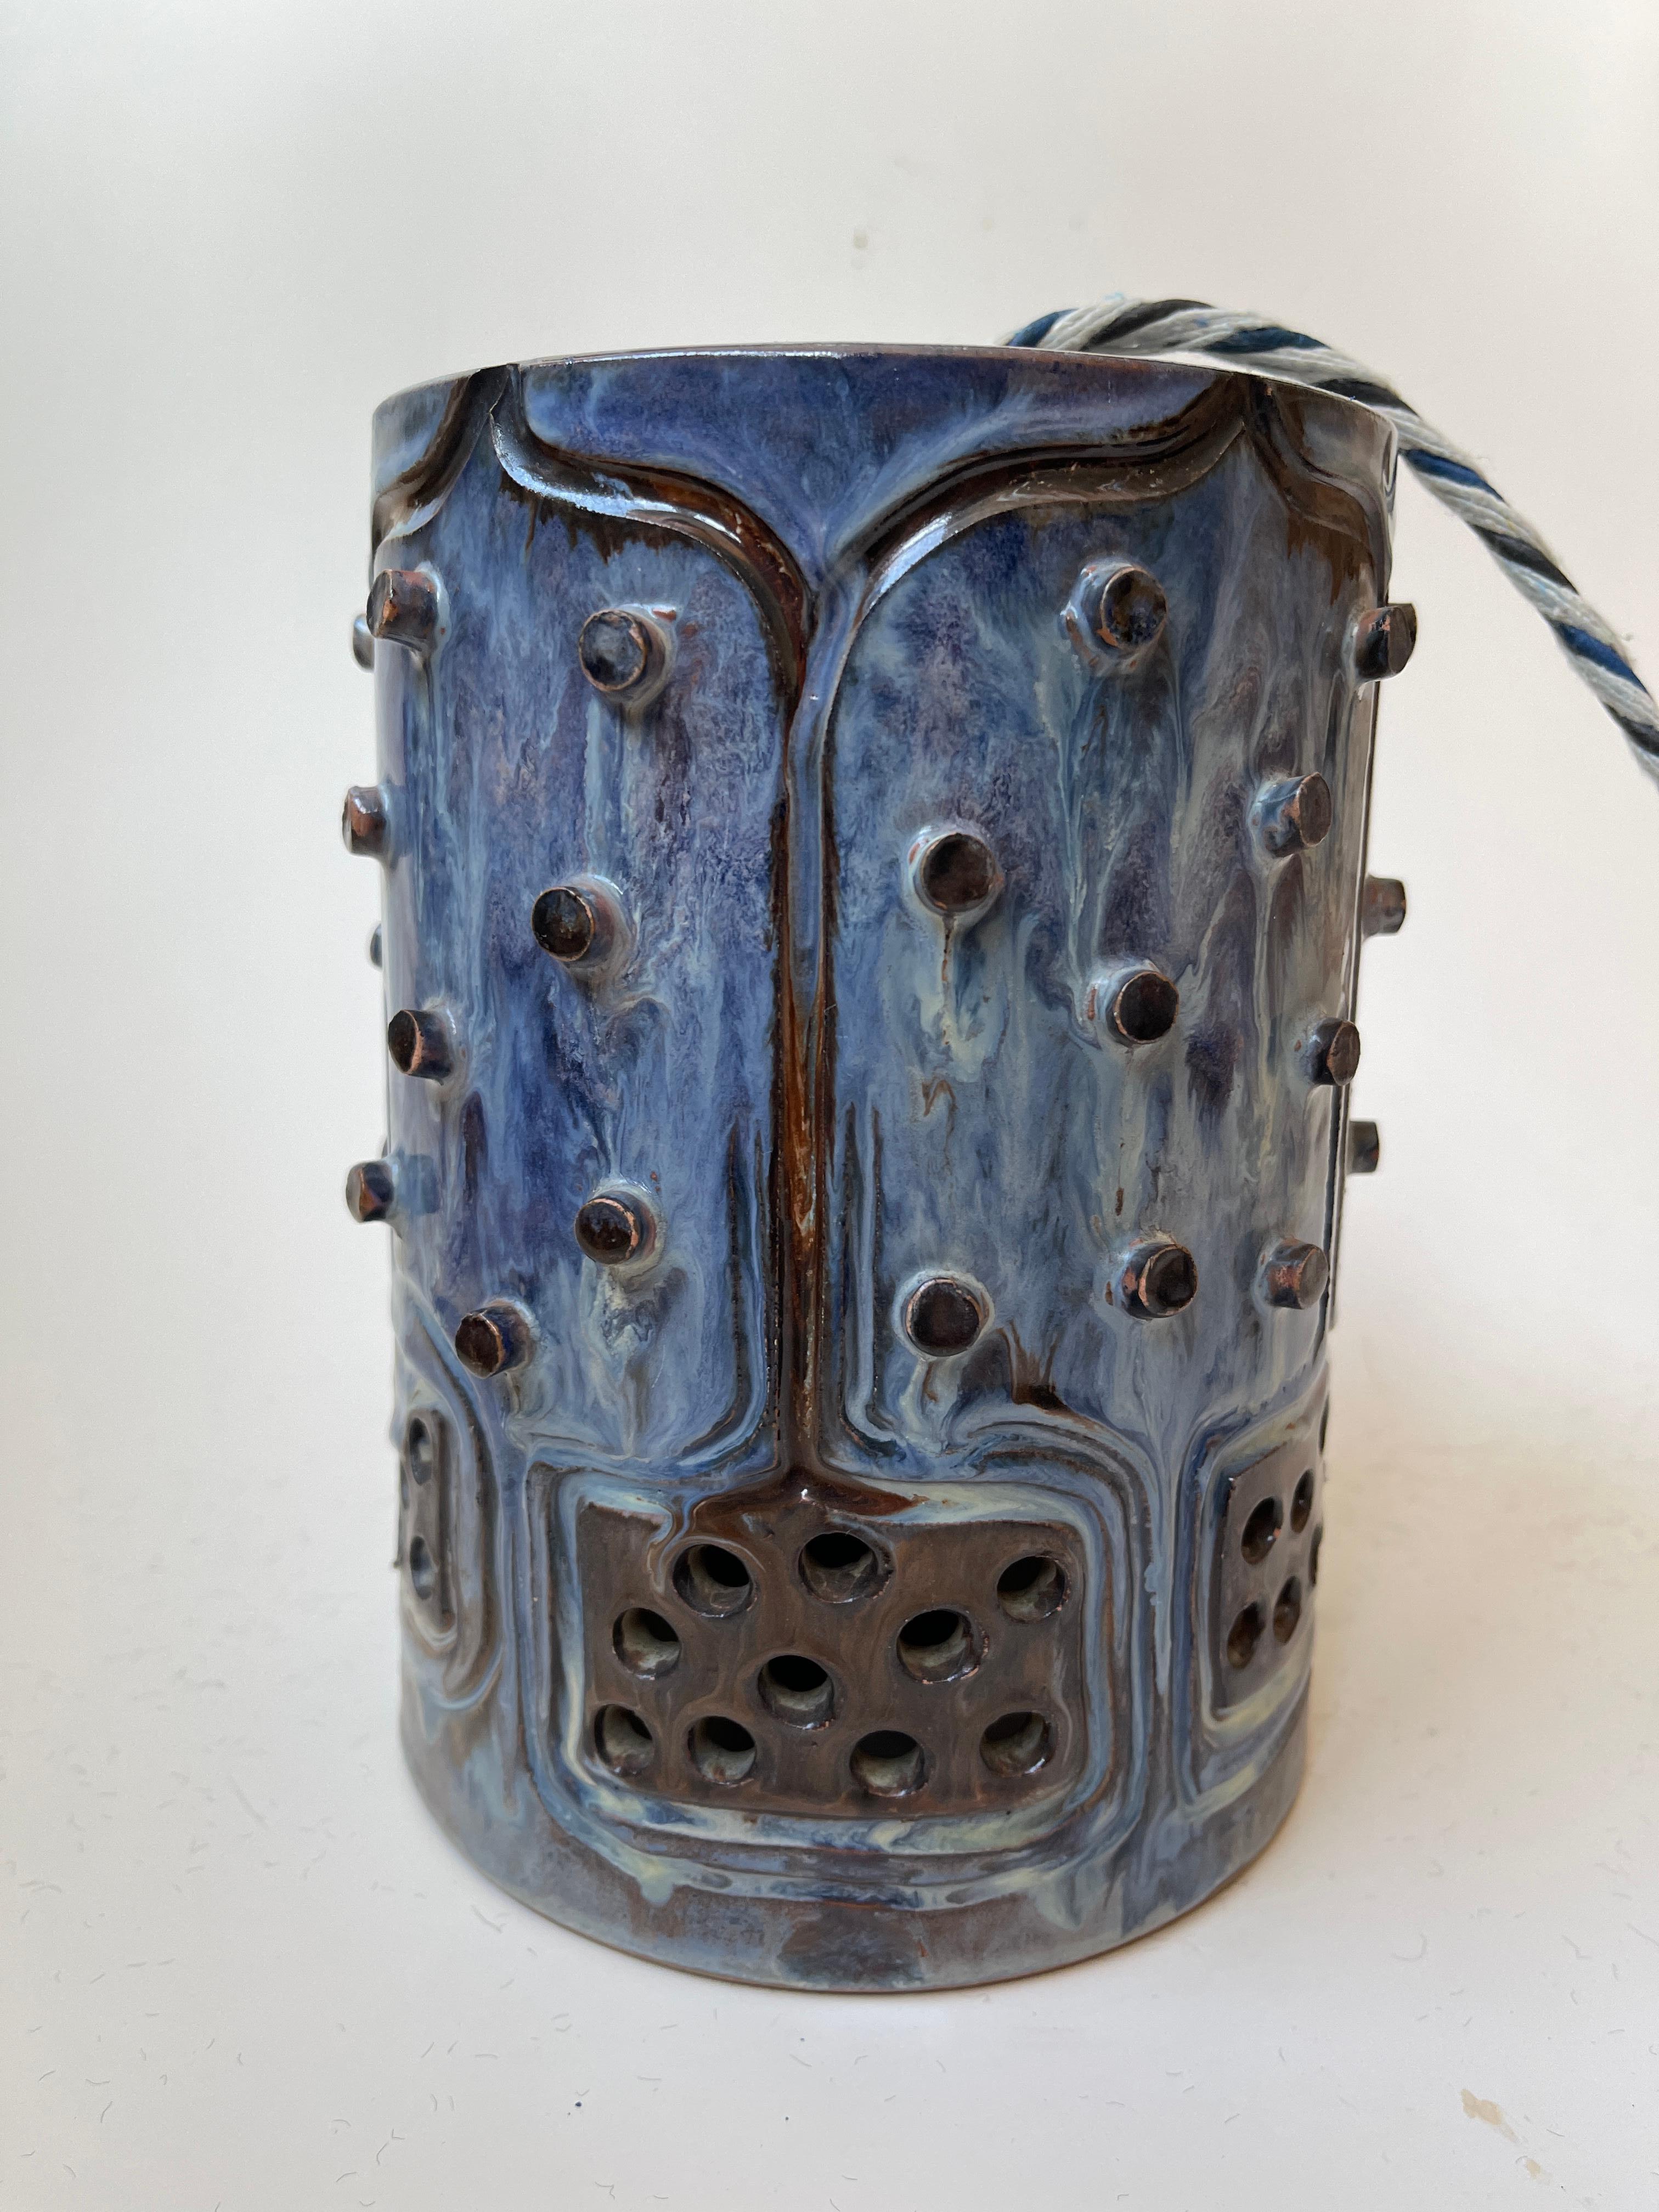 Dänischer brutalistischer Steingut-Hängeleuchter, handgefertigt von Jette Hellerøe. Das Steingut ist in Blau- und Brauntönen gehalten und weist eine schöne genoppte Struktur und offene Ausschnitte auf, durch die das Licht bei Beleuchtung durch die